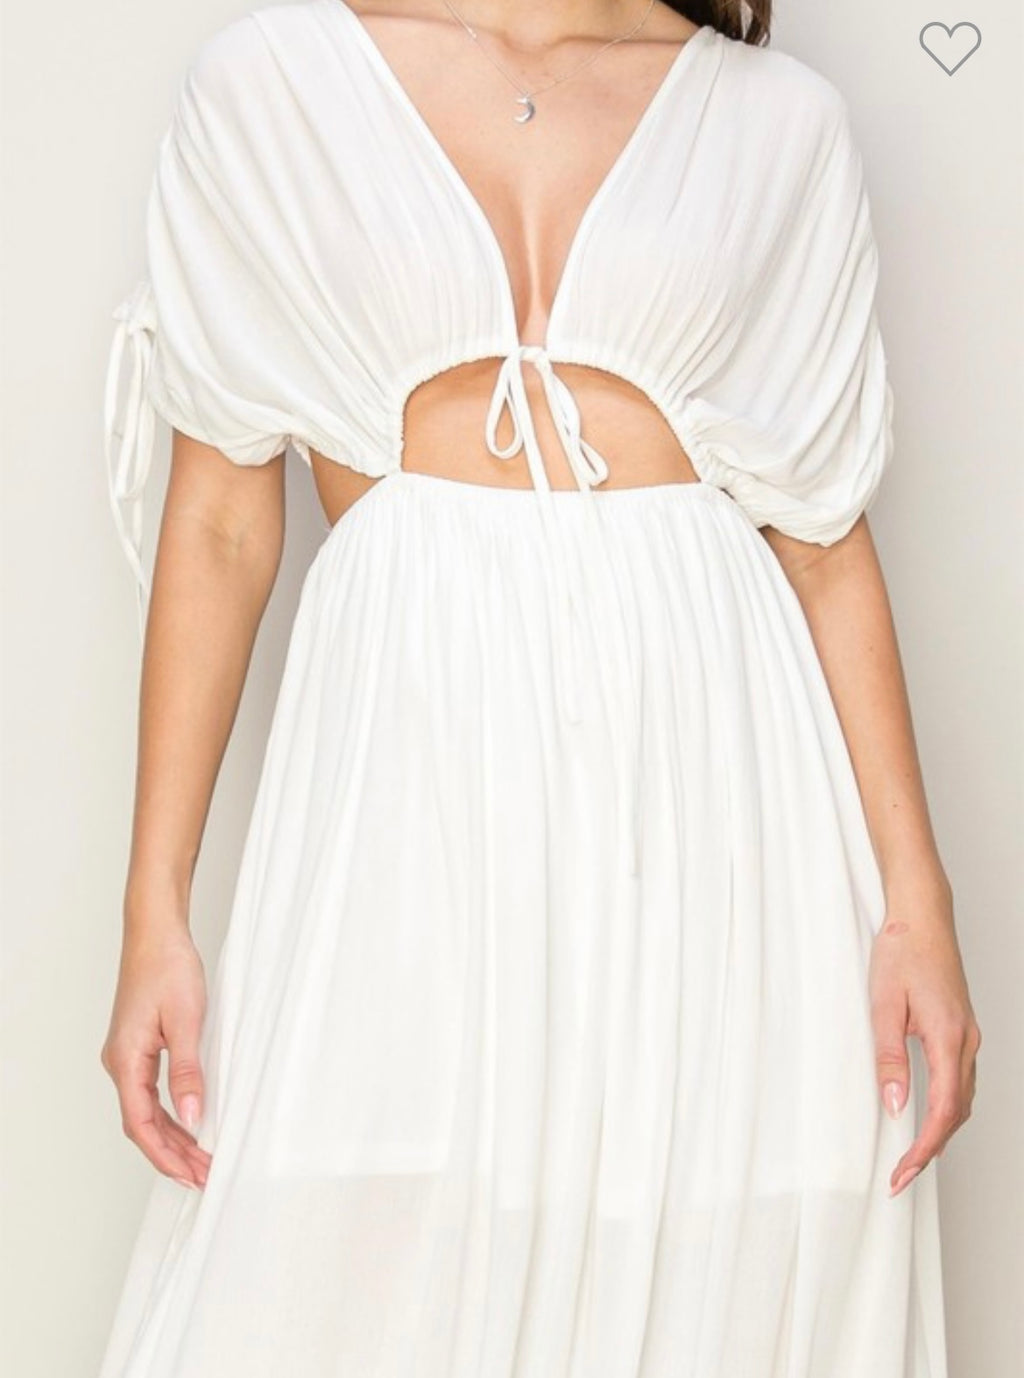 Sexy white maxi dress